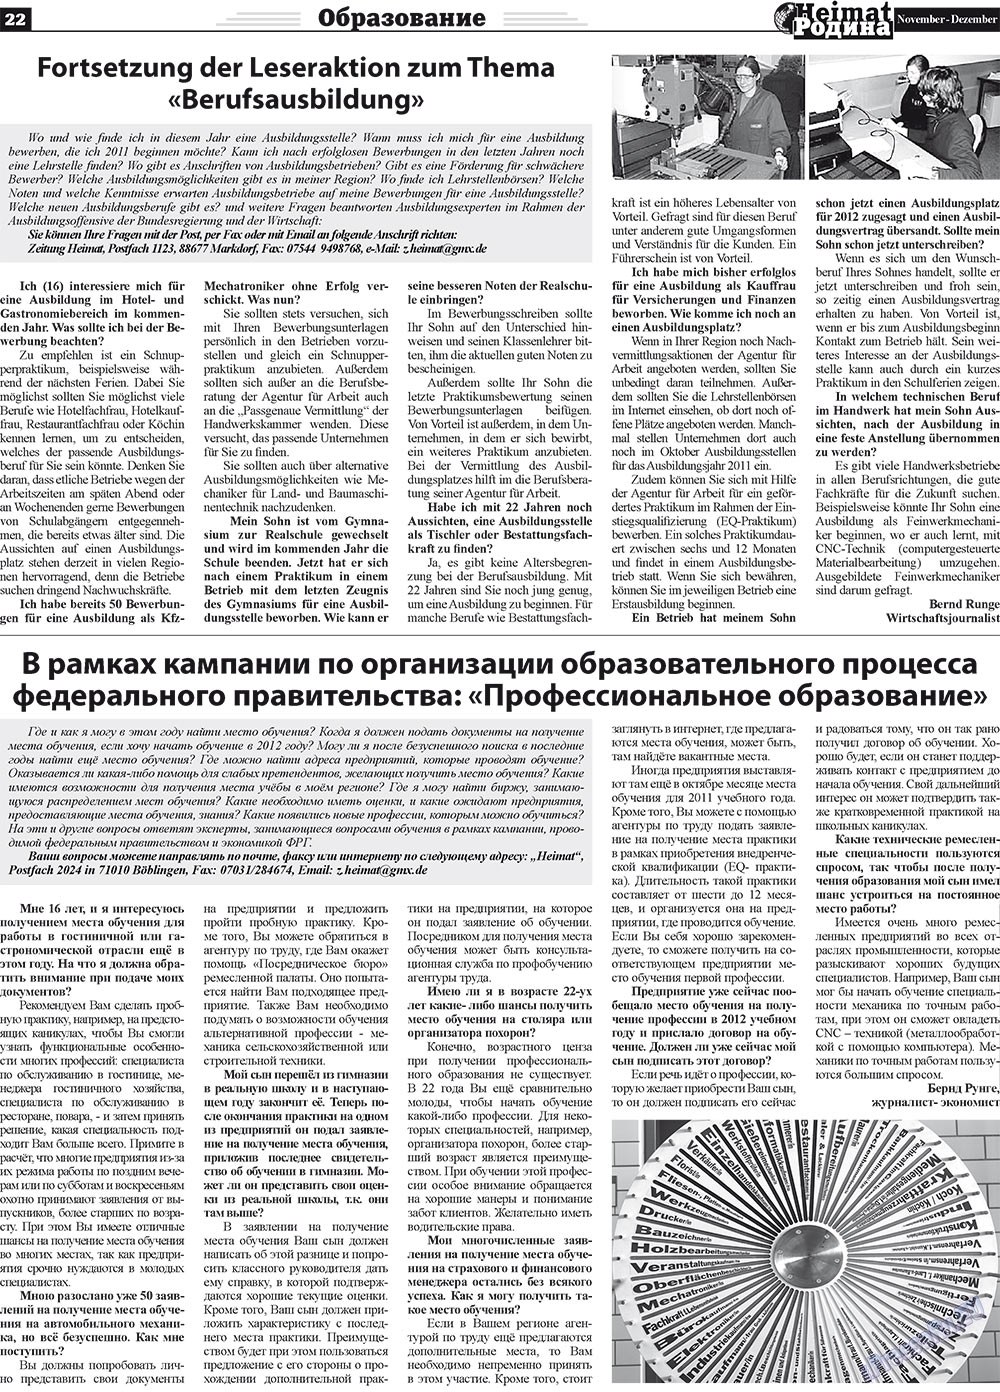 Heimat-Родина (газета). 2011 год, номер 11, стр. 22